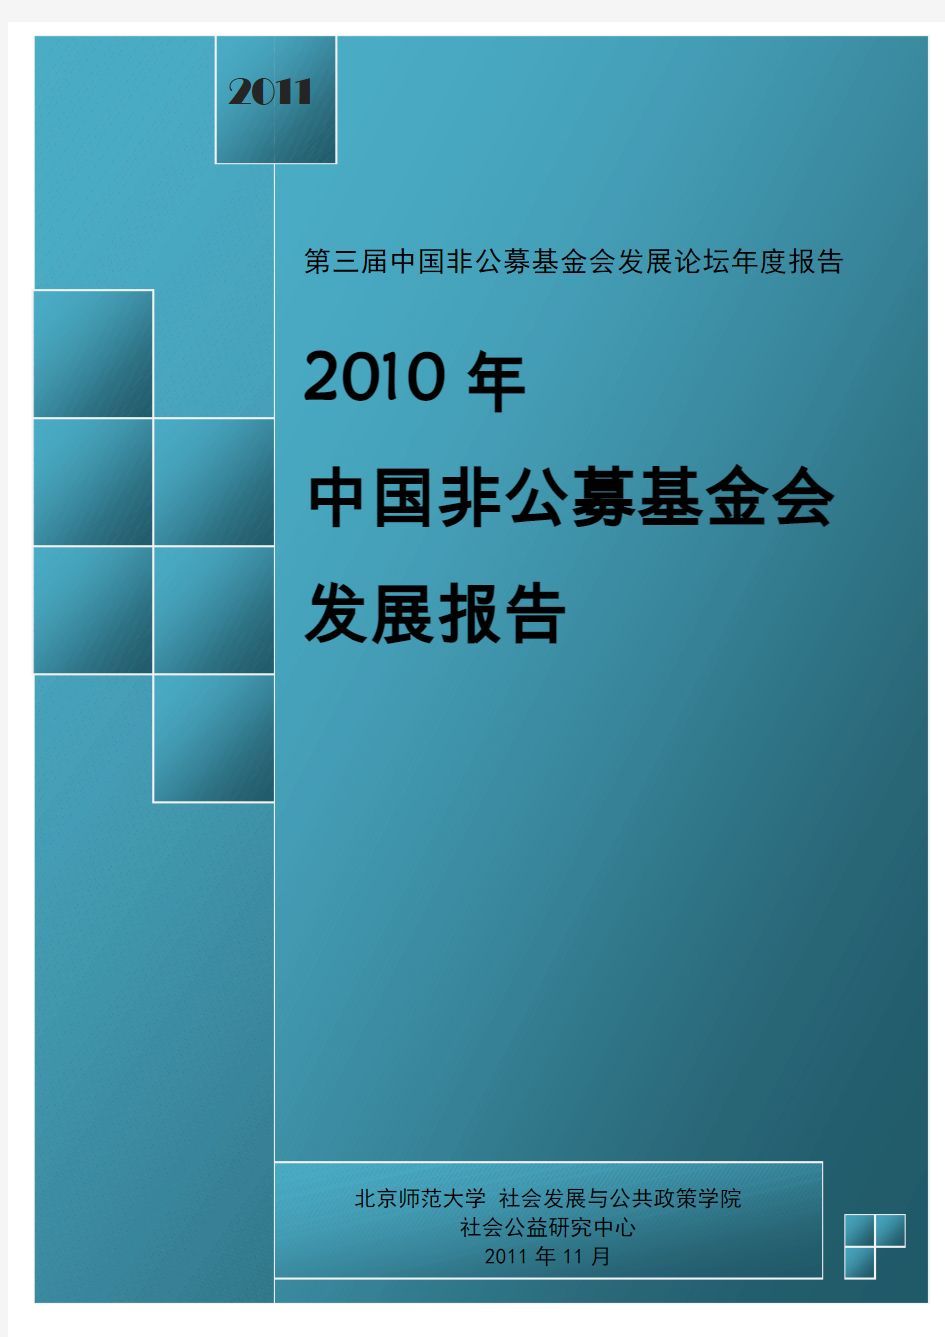 2011中国非公募基金会发展报告